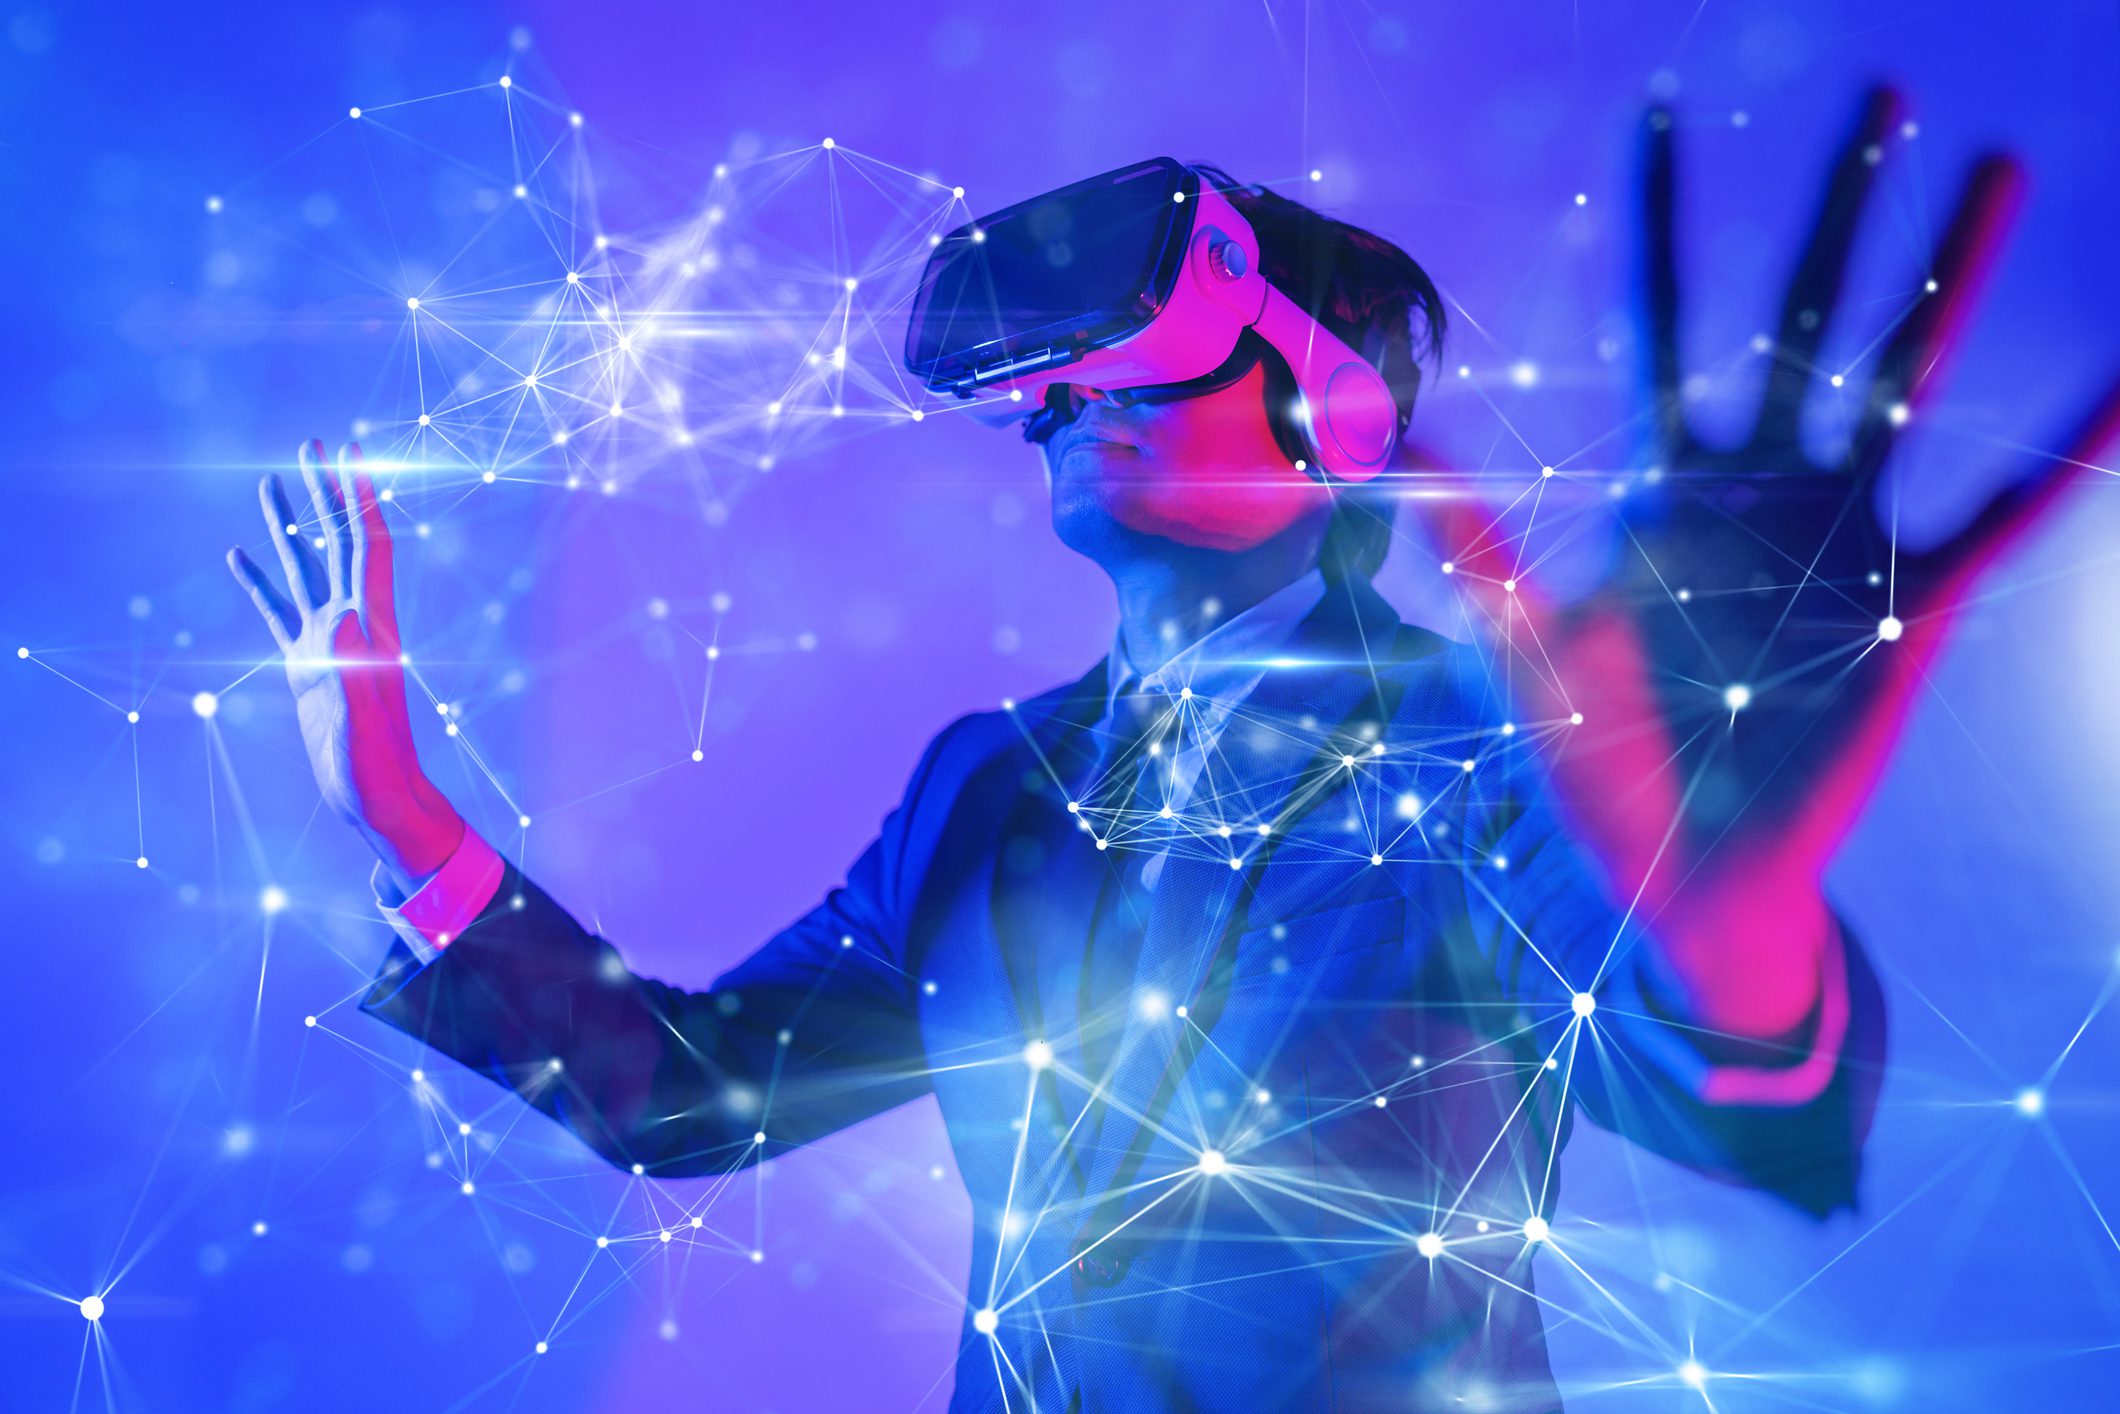 El futuro de la realidad virtual en educación